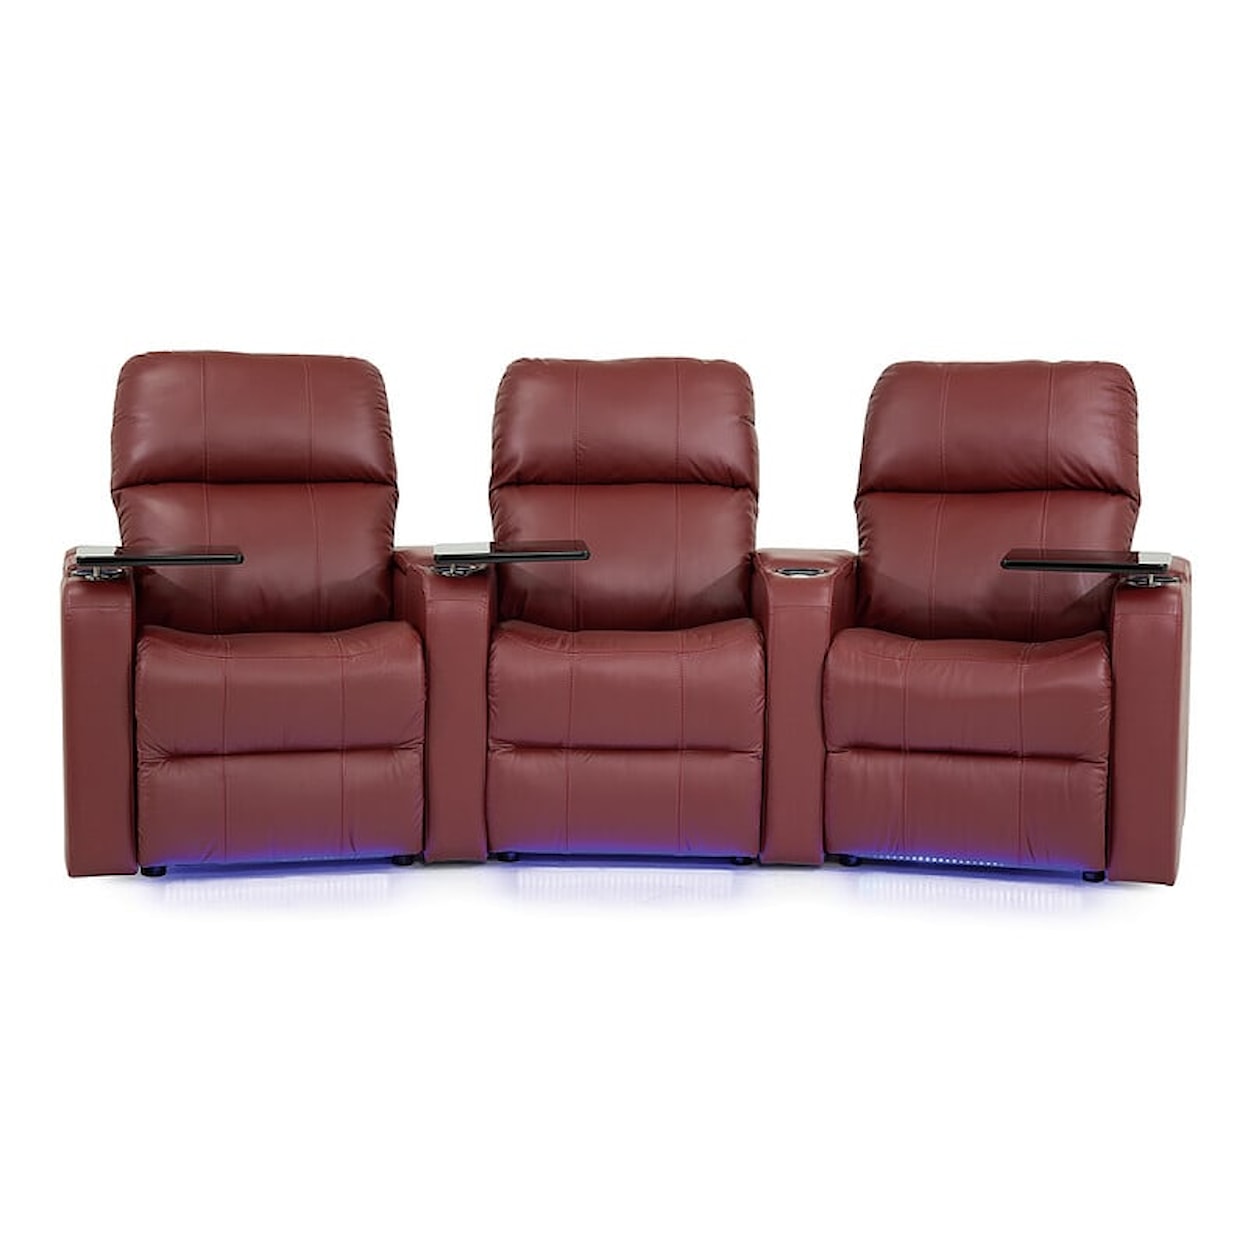 Palliser Elite Elite 3-Seat Power Reclining Theater Seating